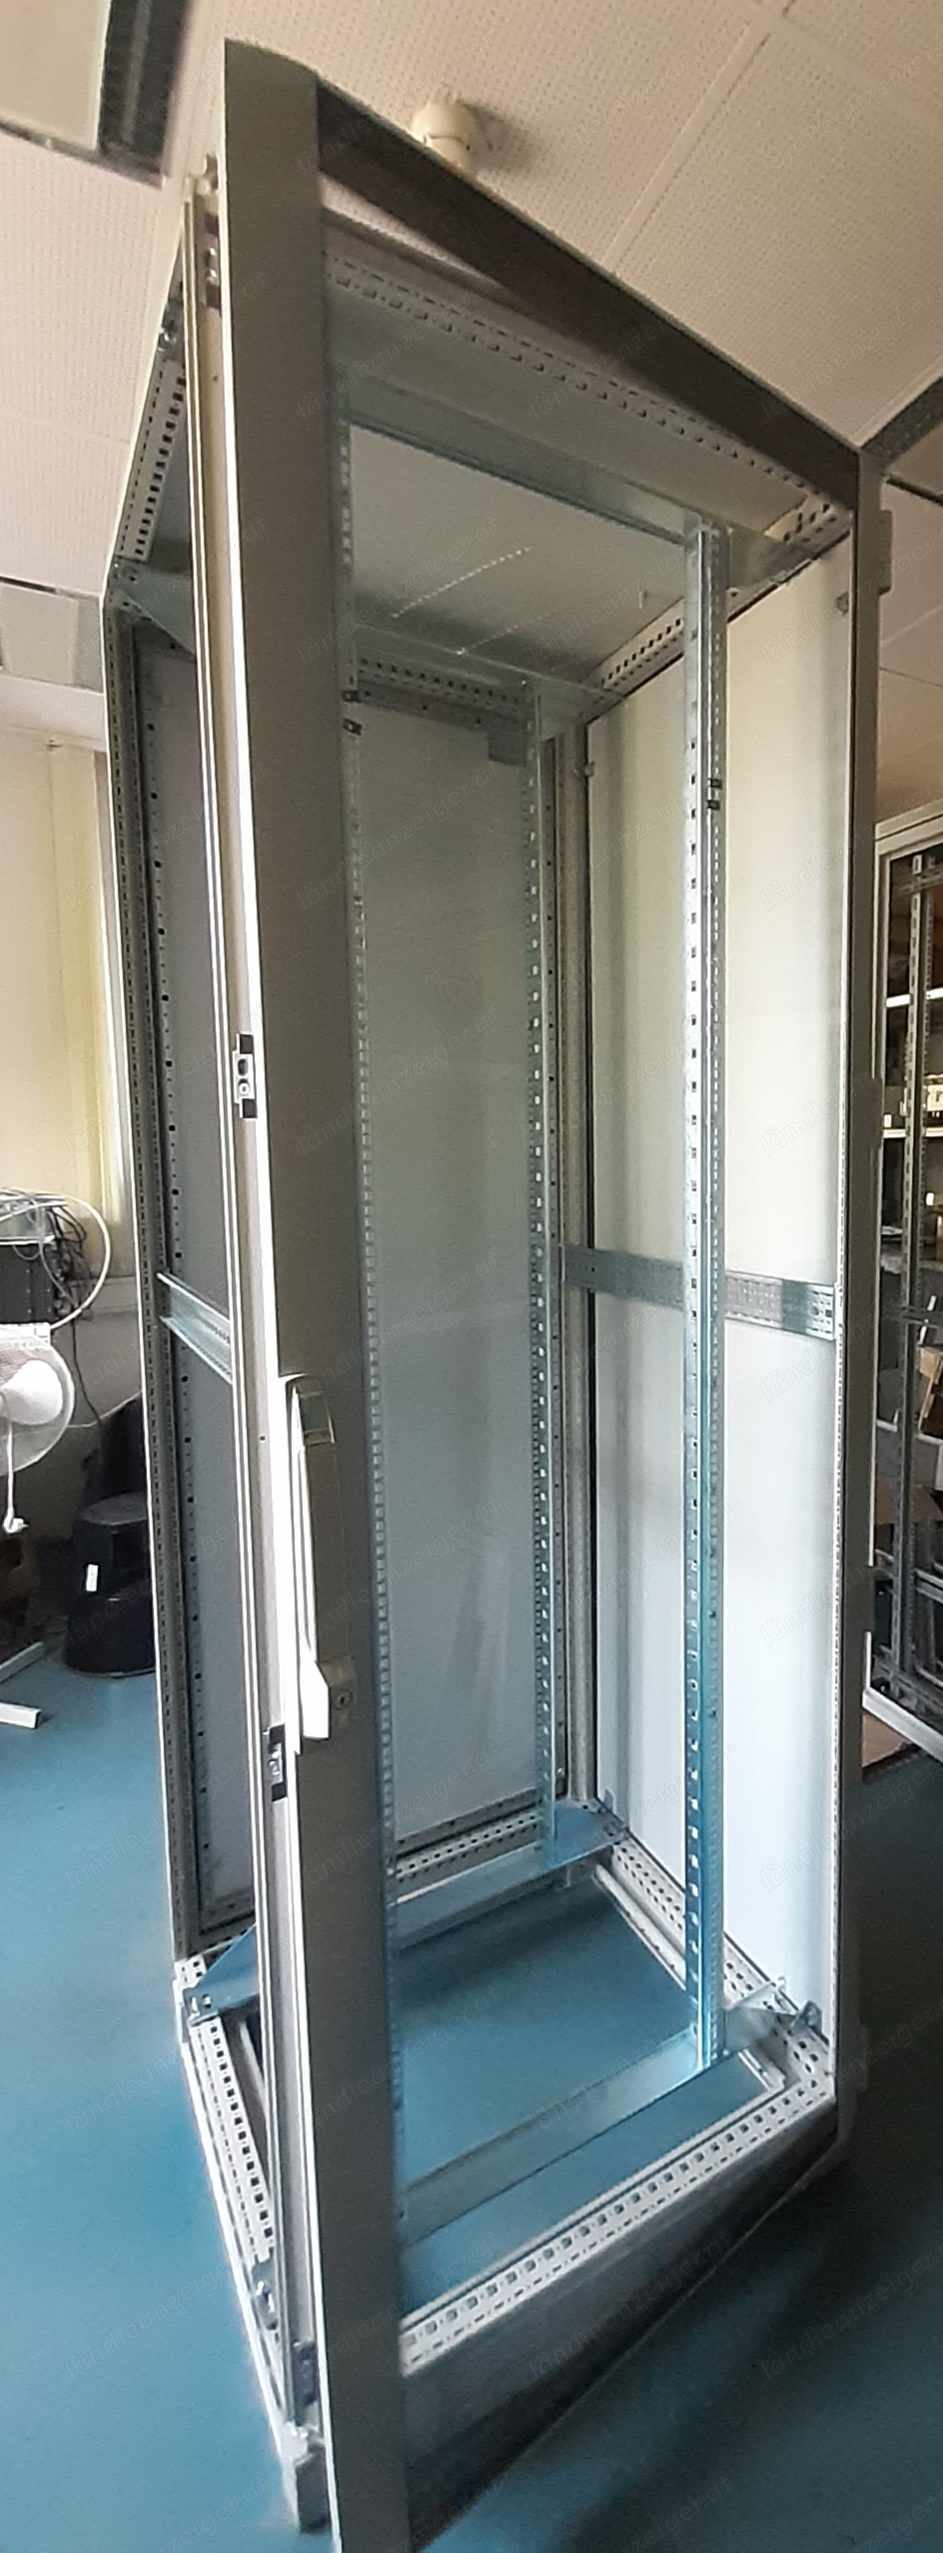 professioneller Server- und Netzwerkschrank mit Wänden und Tür, Rittal TS8, gebraucht 800x800 mm